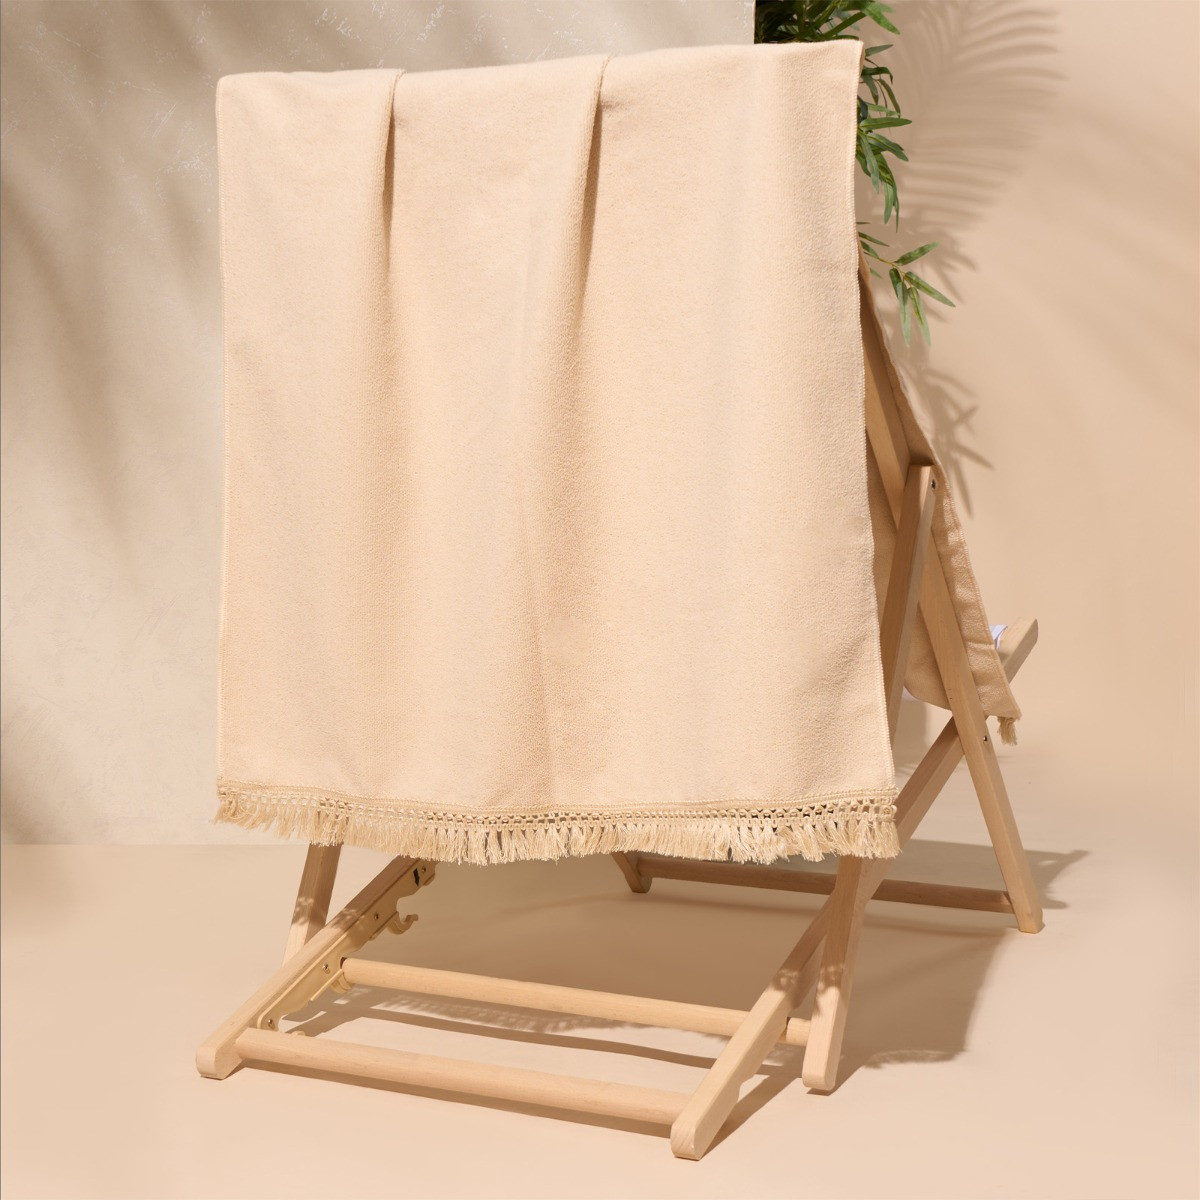 Sienna Tassel Beach Towel Bag - Natural Beige>